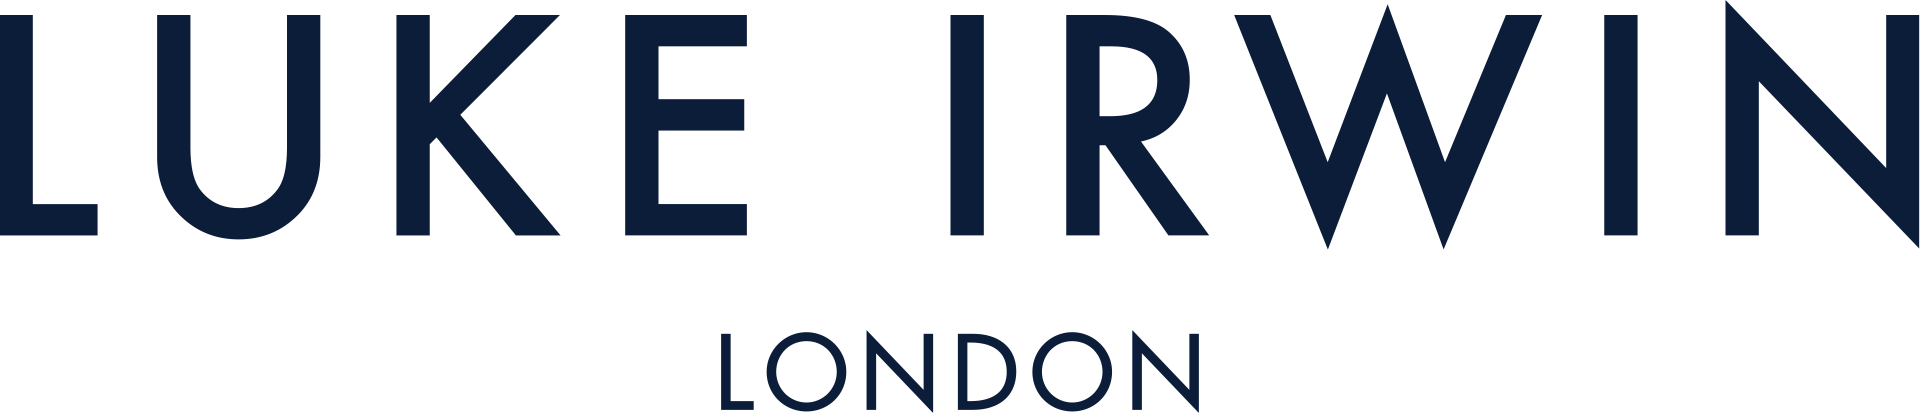 Luke Irwin London logo